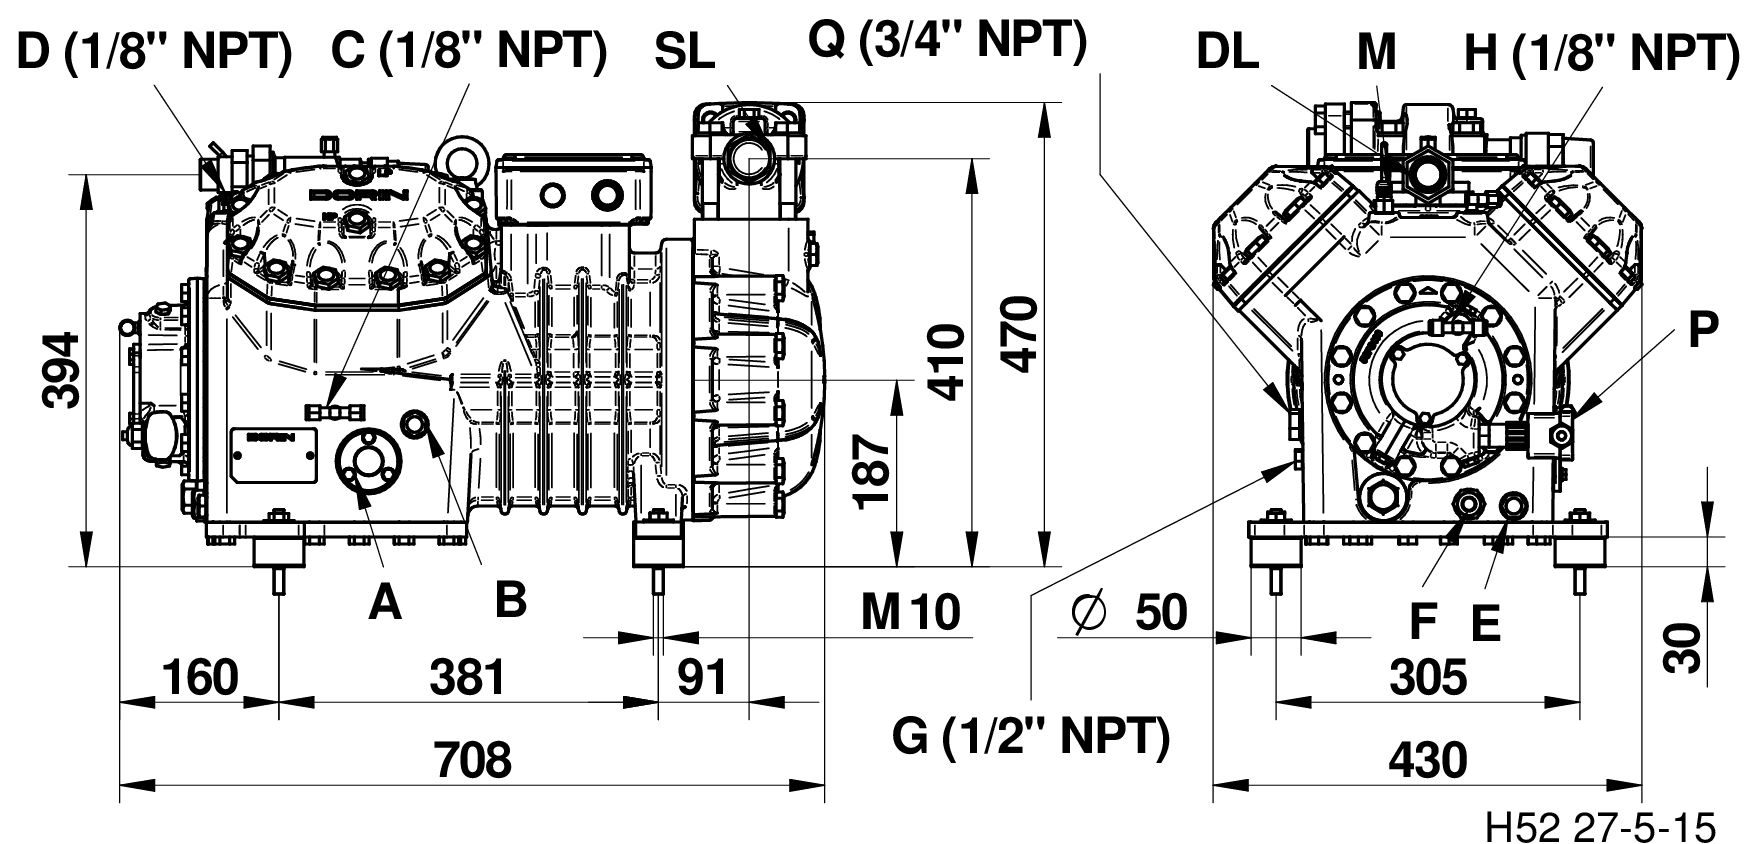 H1500EP - Compressori Semiermetici per R134a Serie HEP | DORIN